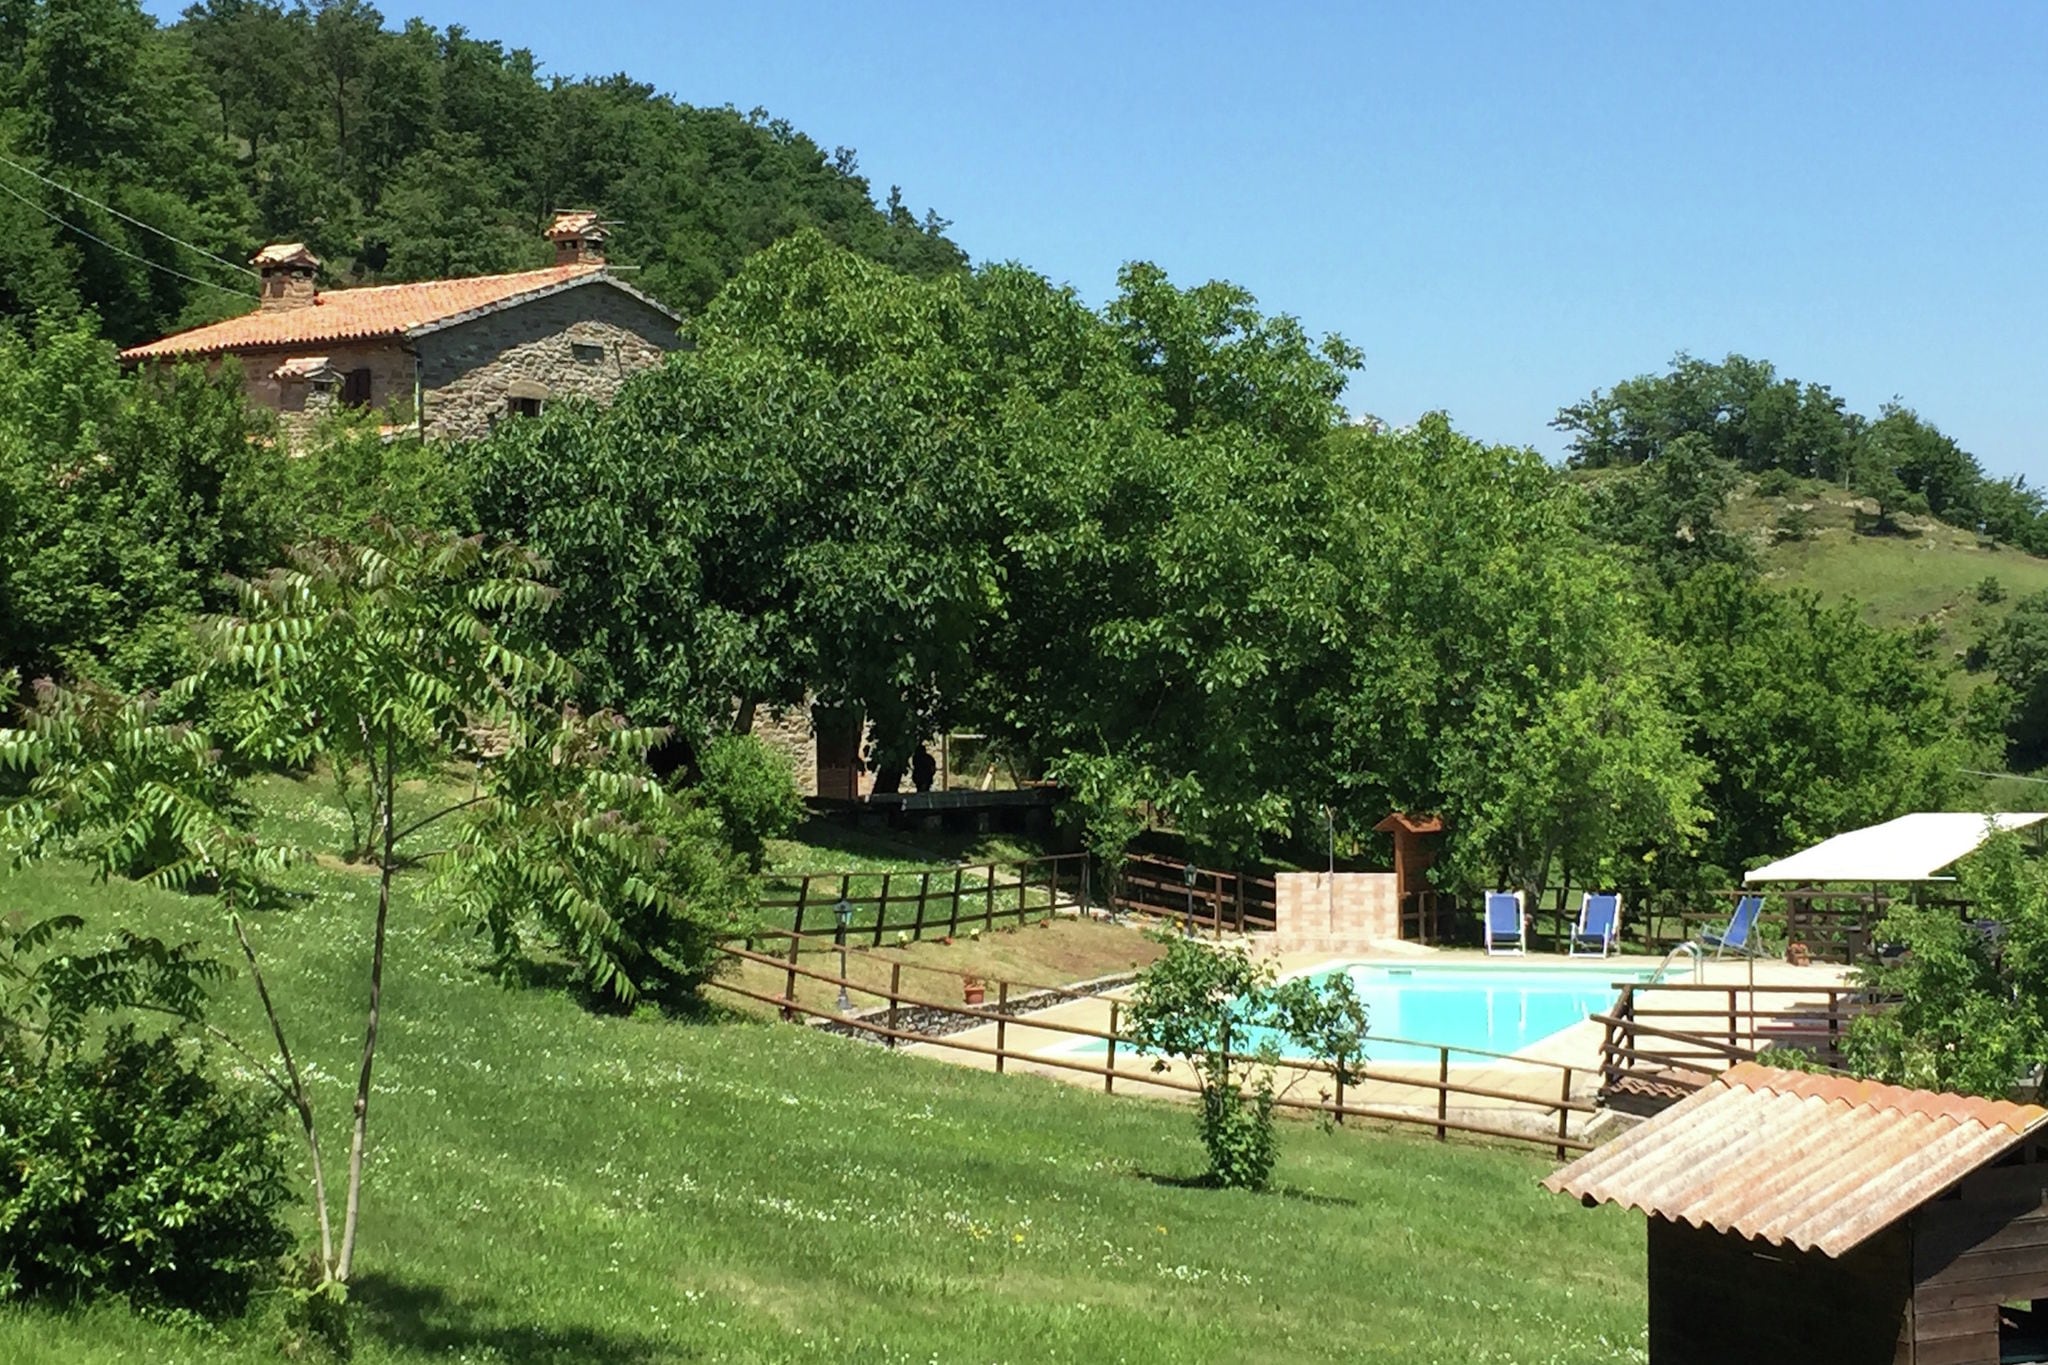 Landelijke vakantiewoning in Apecchio met een tuin